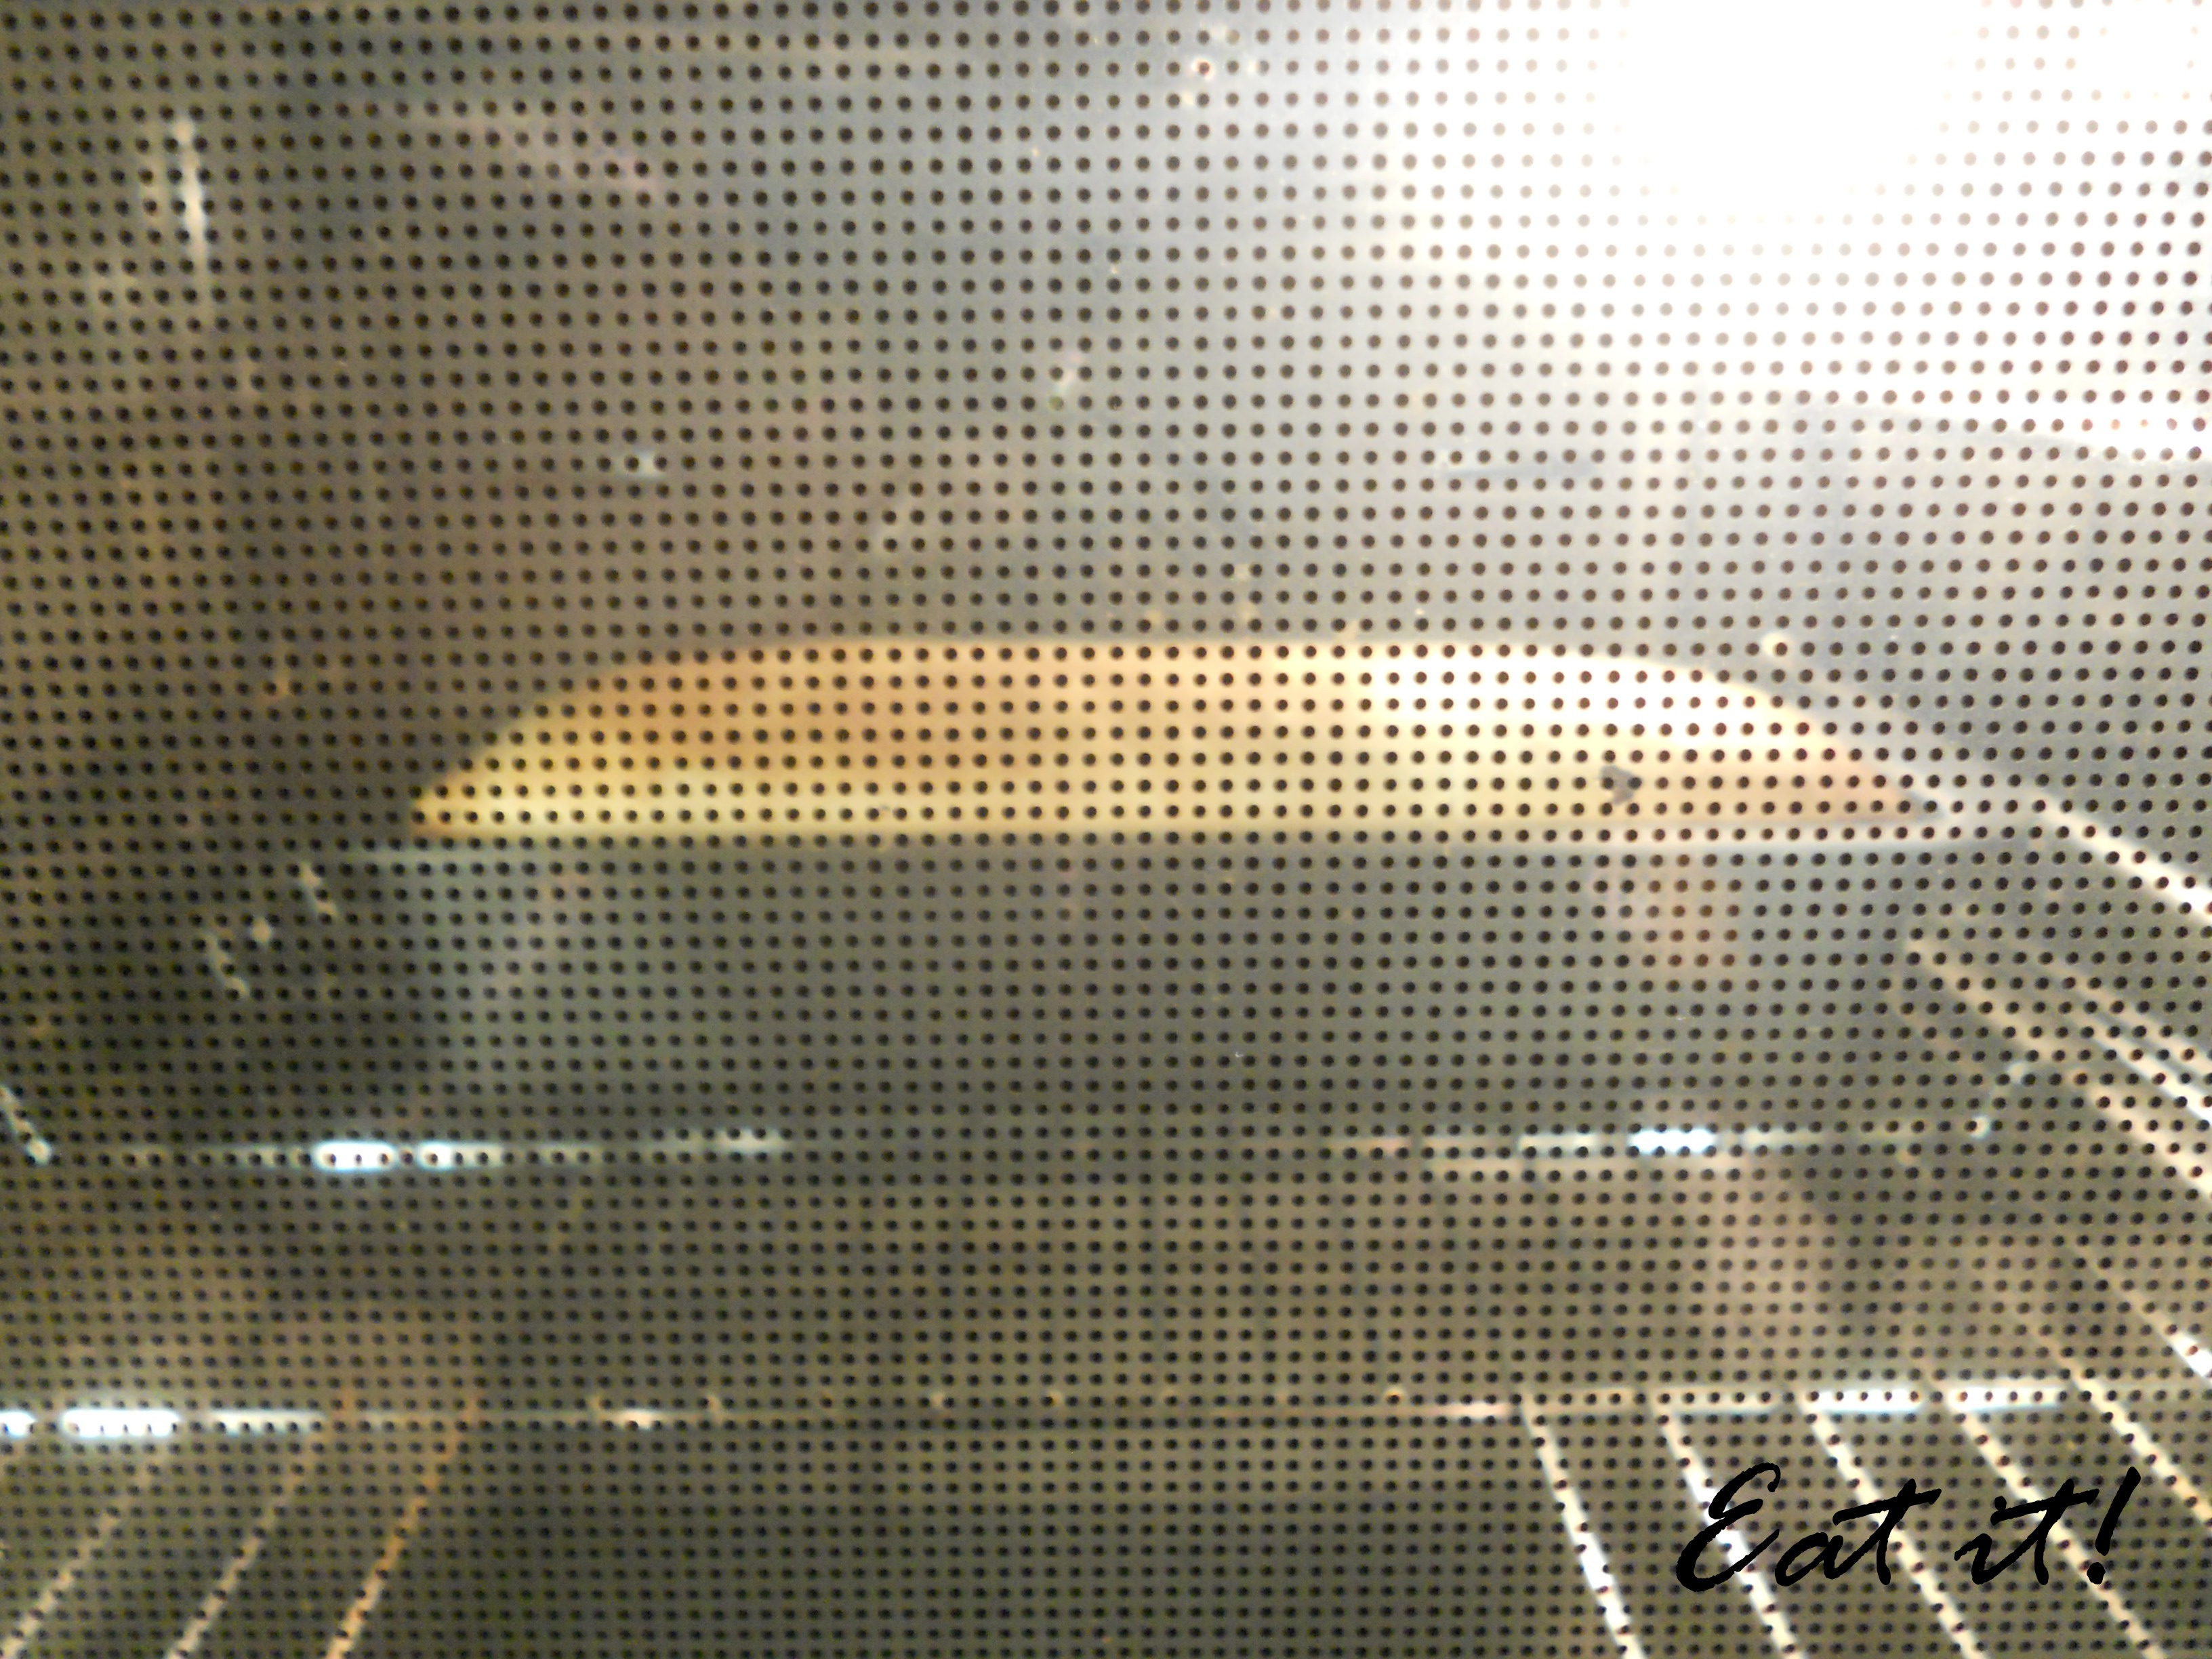 Pane in cassetta - In forno con lo stampo